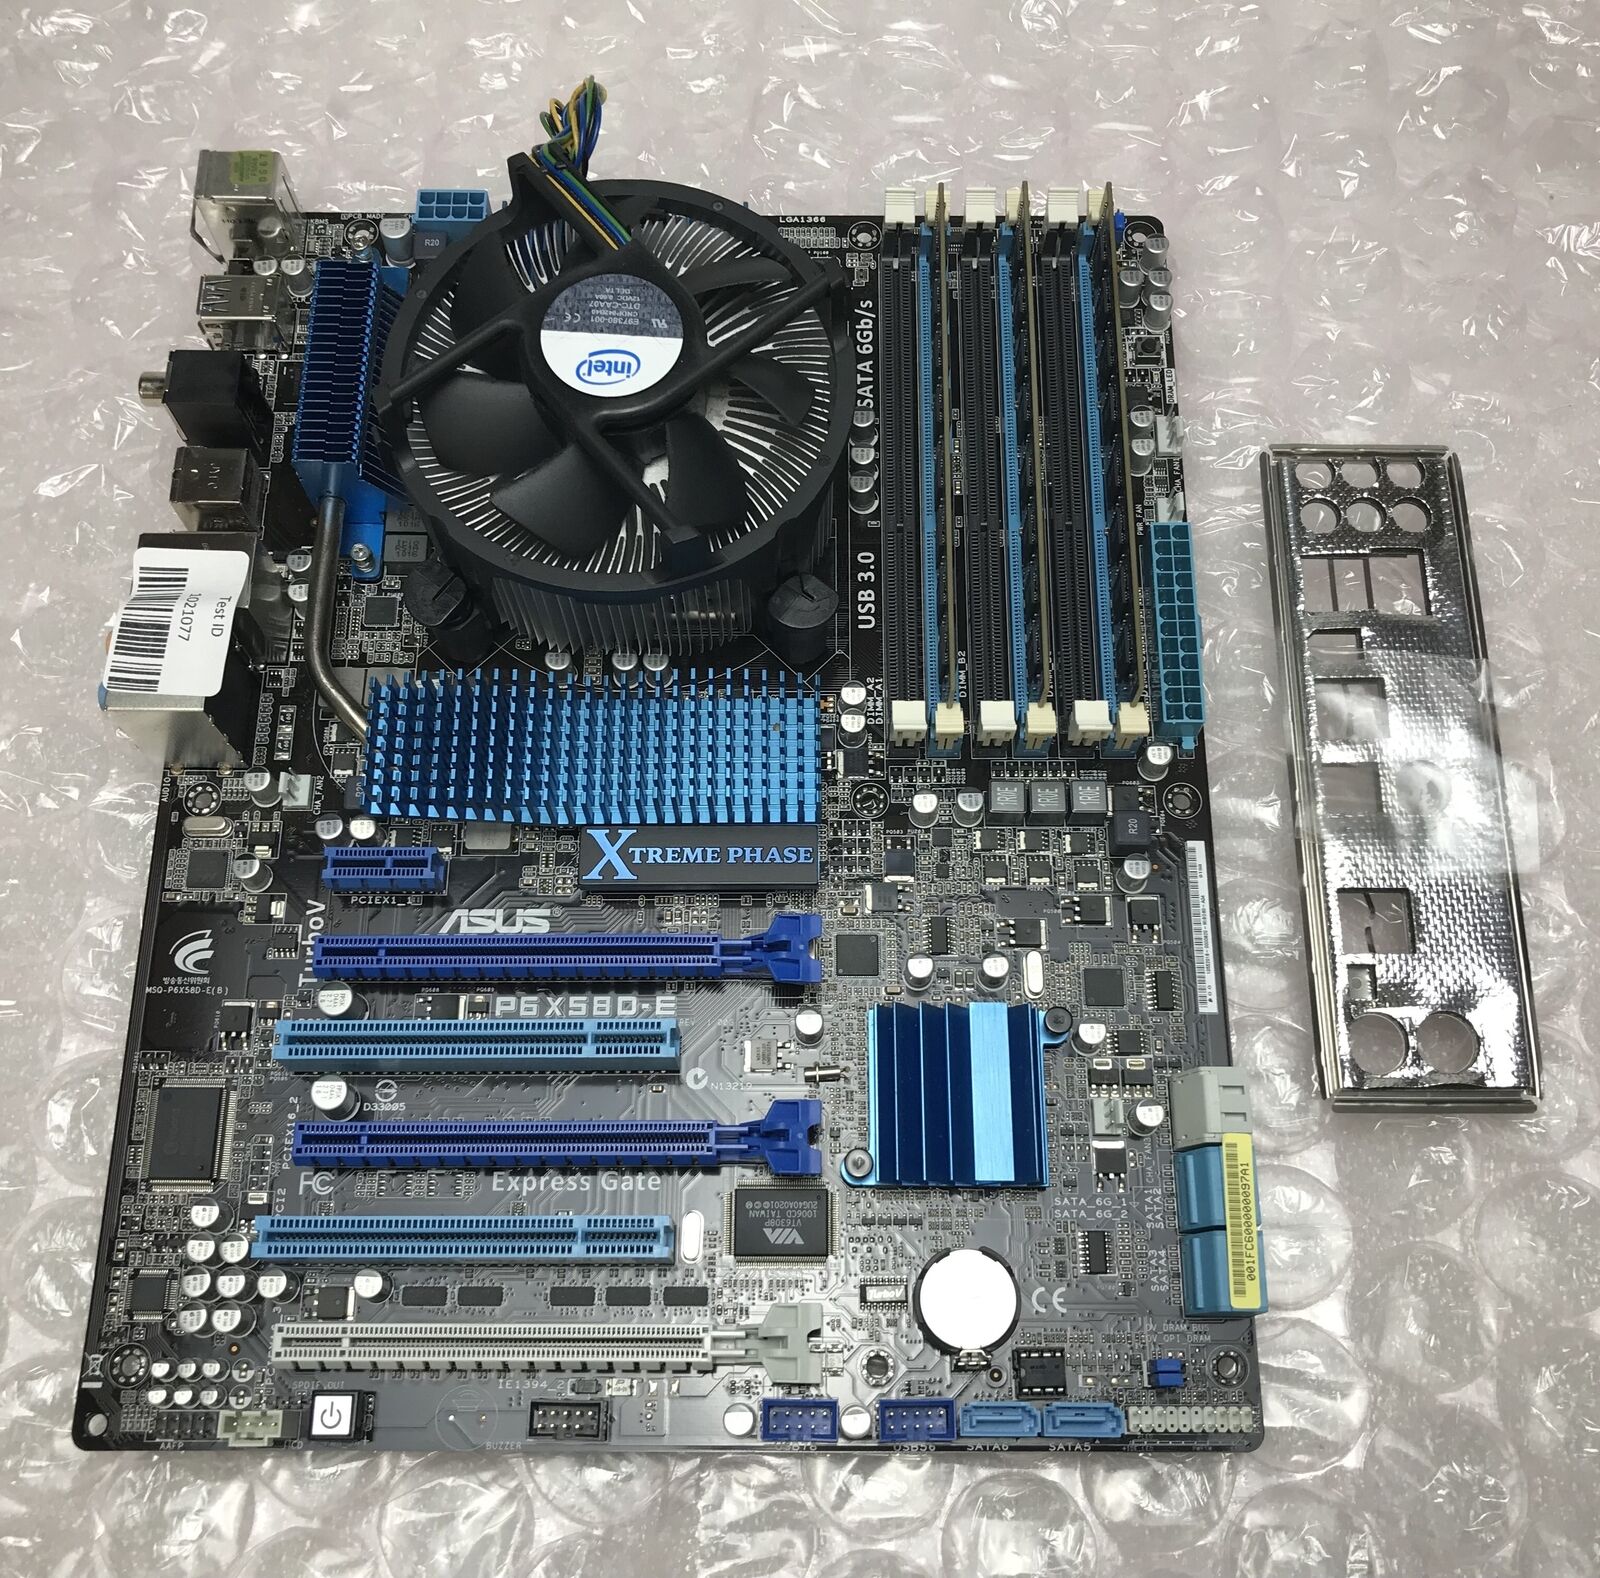 Asus P6X58D-E Motherboard, Core i7-950 @3.07GHz, Heatsink/Fan, 12GB DDR3 RAM